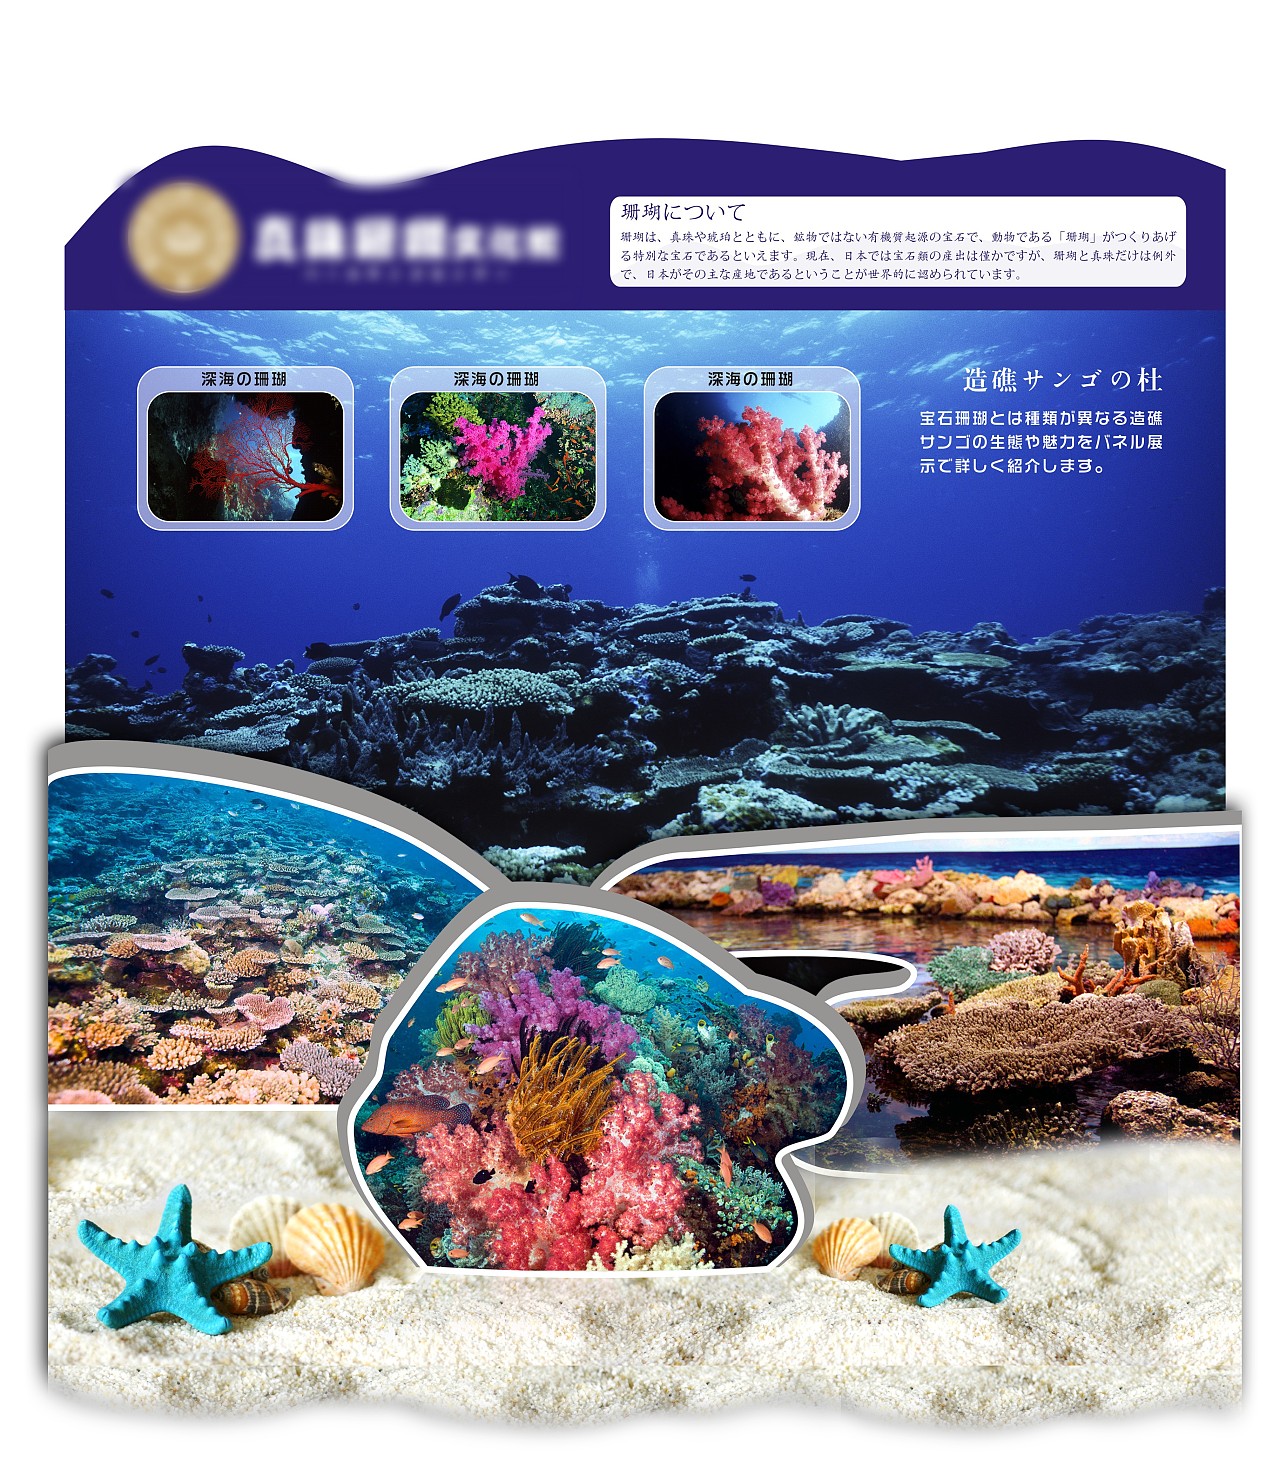 红珊瑚文化知识宣传推广 展示架设计制作 红珊